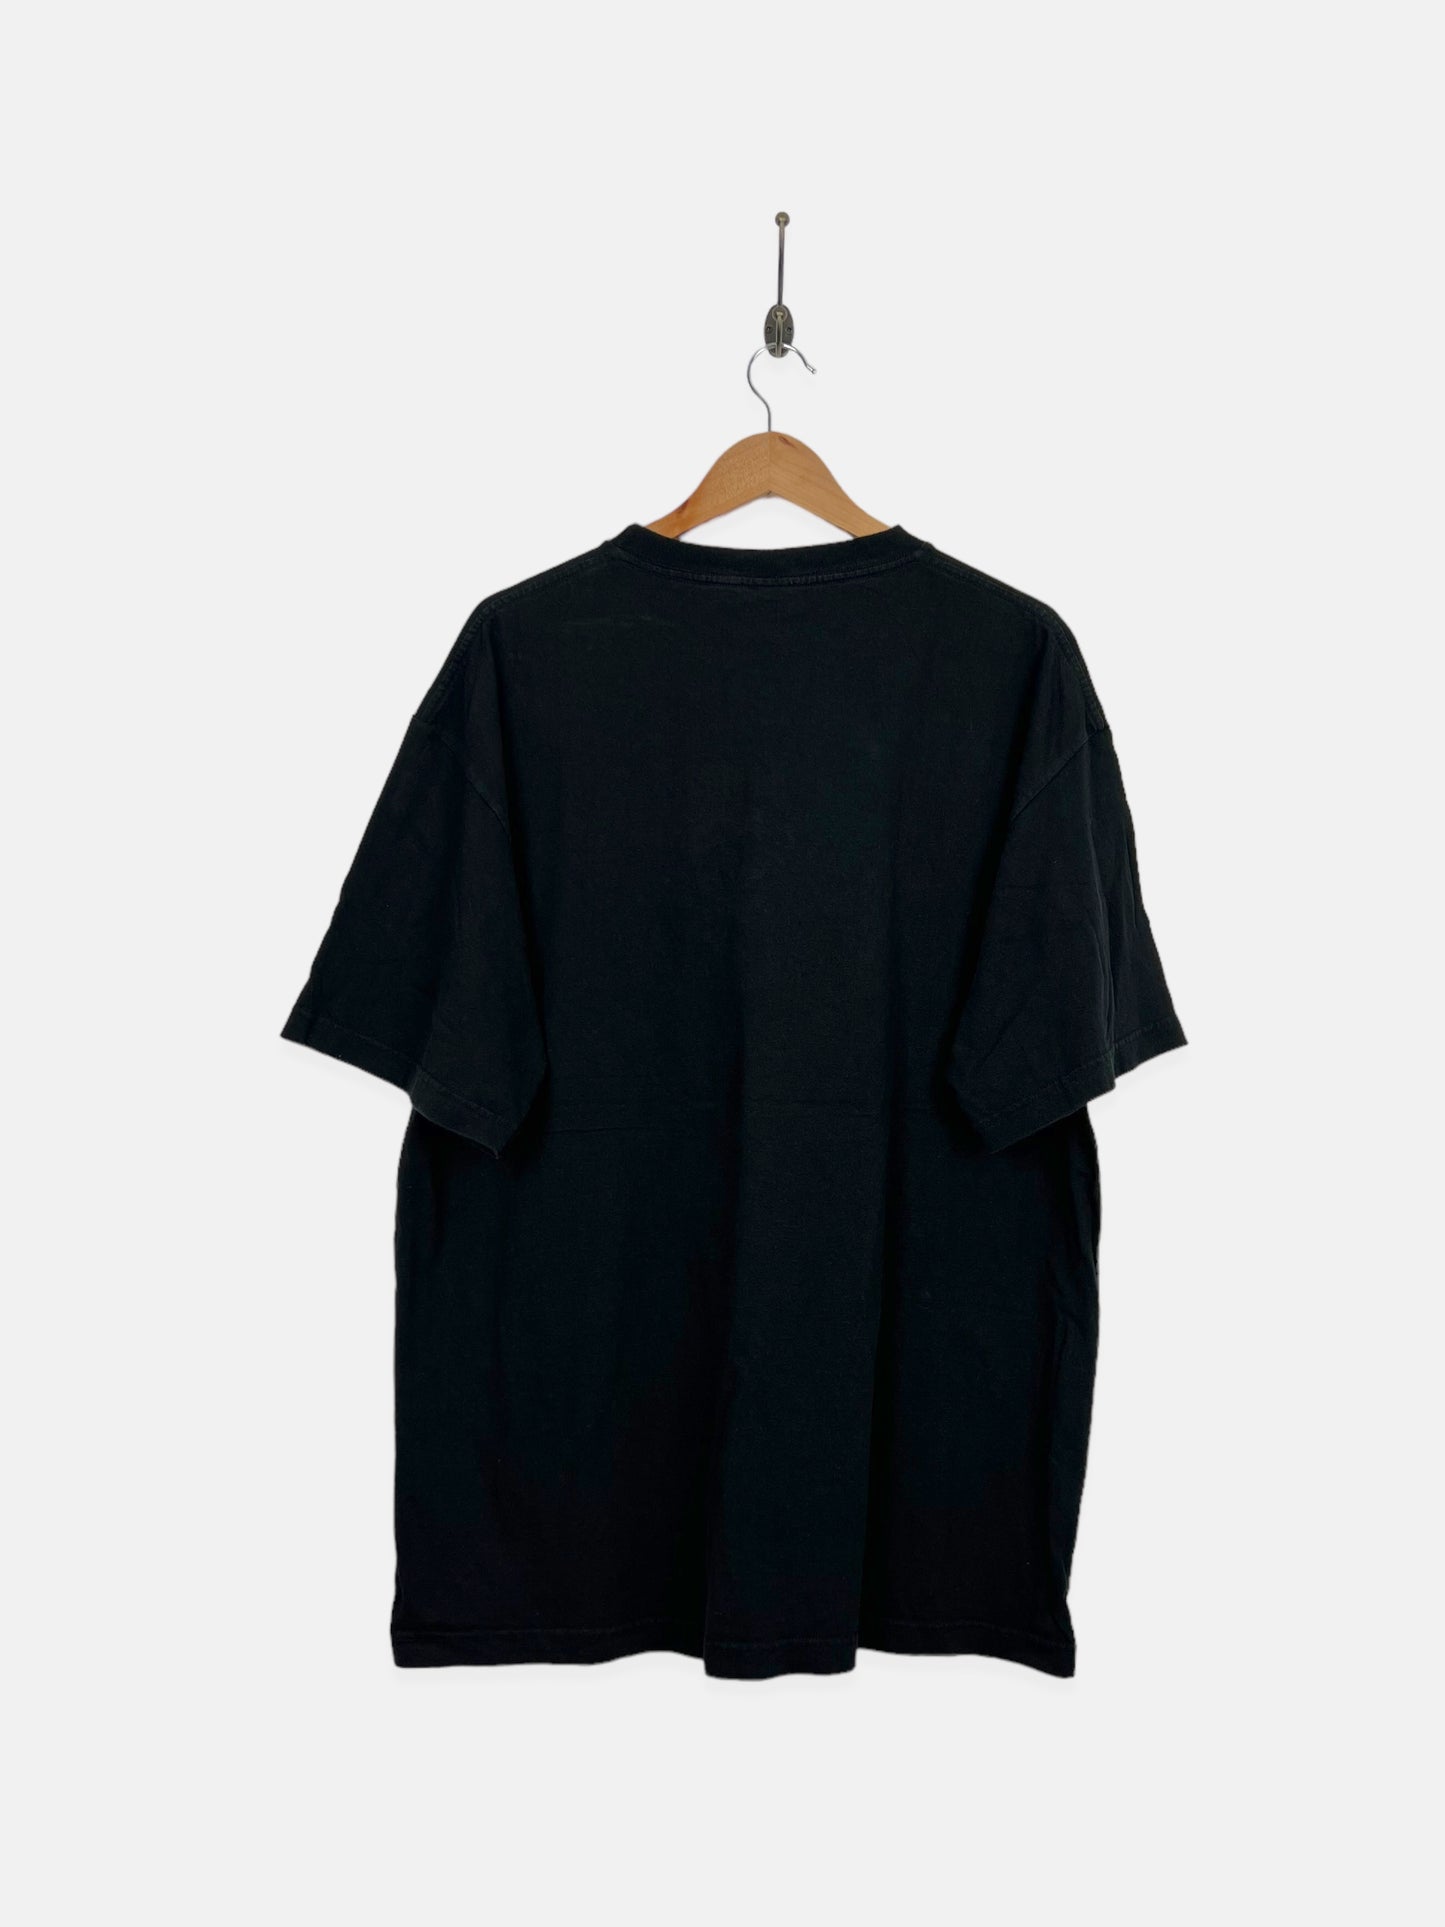 NFL Super Bowl Ravens vs Giants Embroidered Vintage T-Shirt Size 2XL